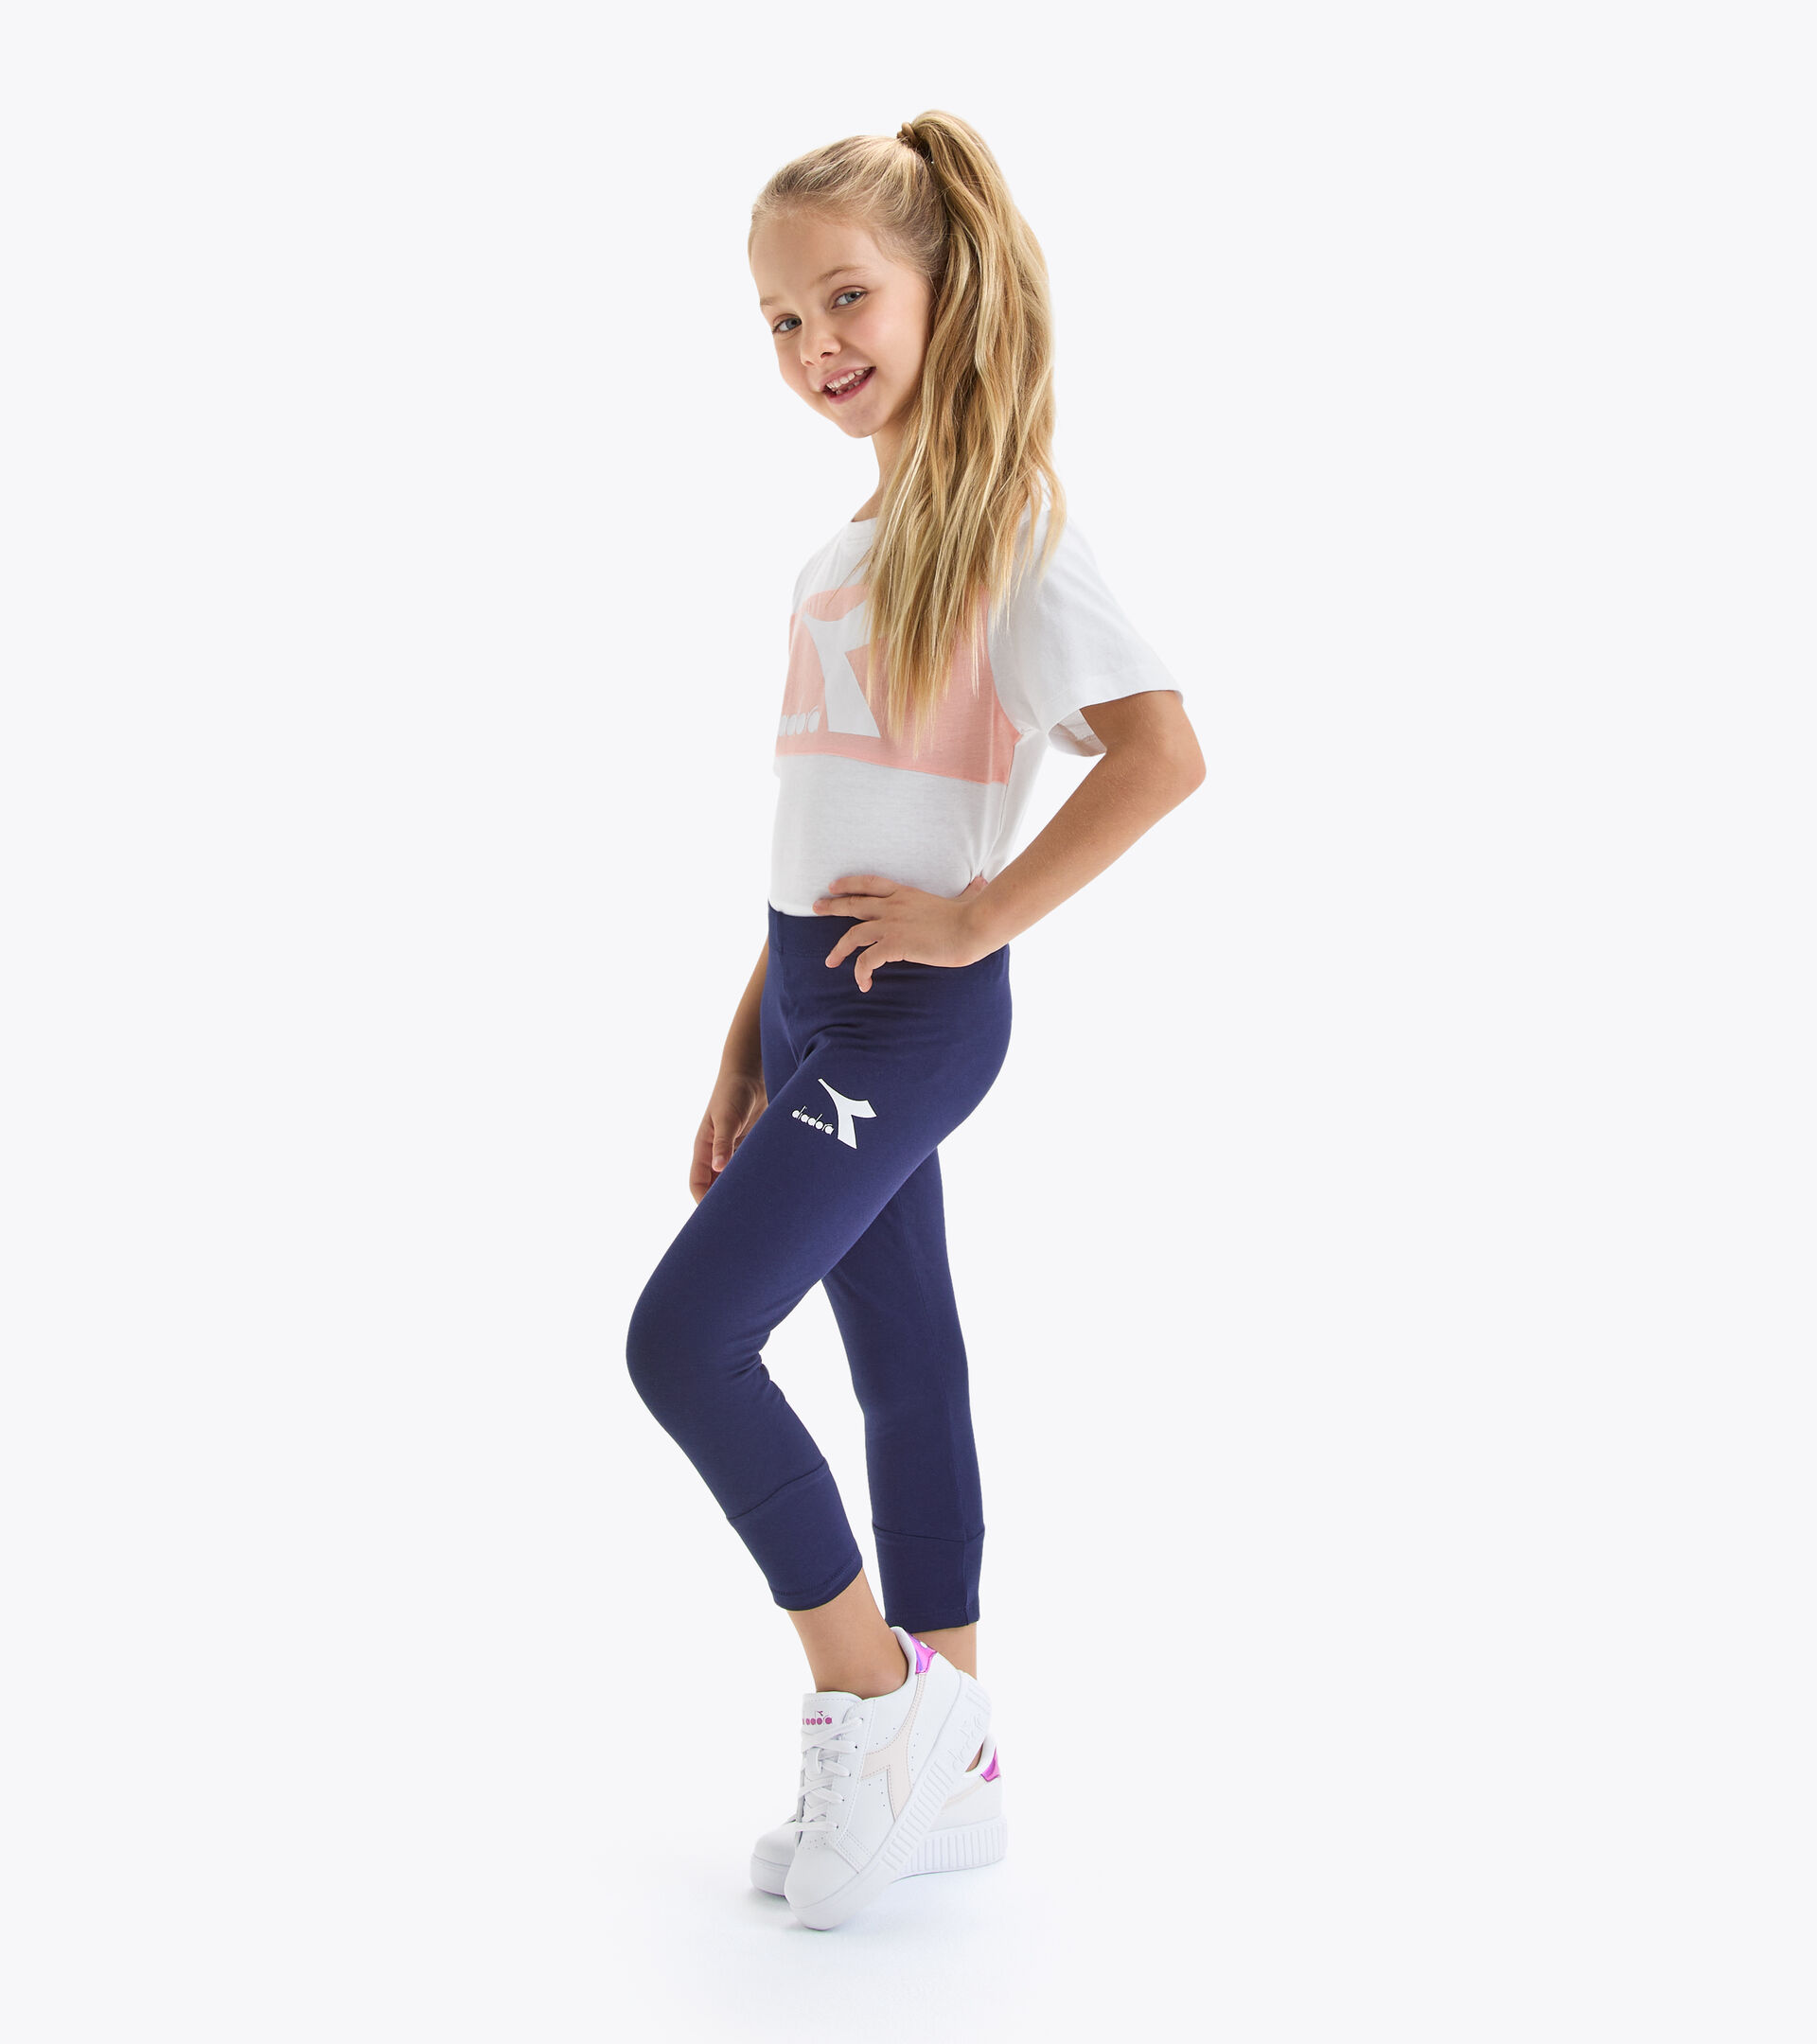 JG.LEGGINGS BOUNCE Leggings - Girls - Diadora Online Store US